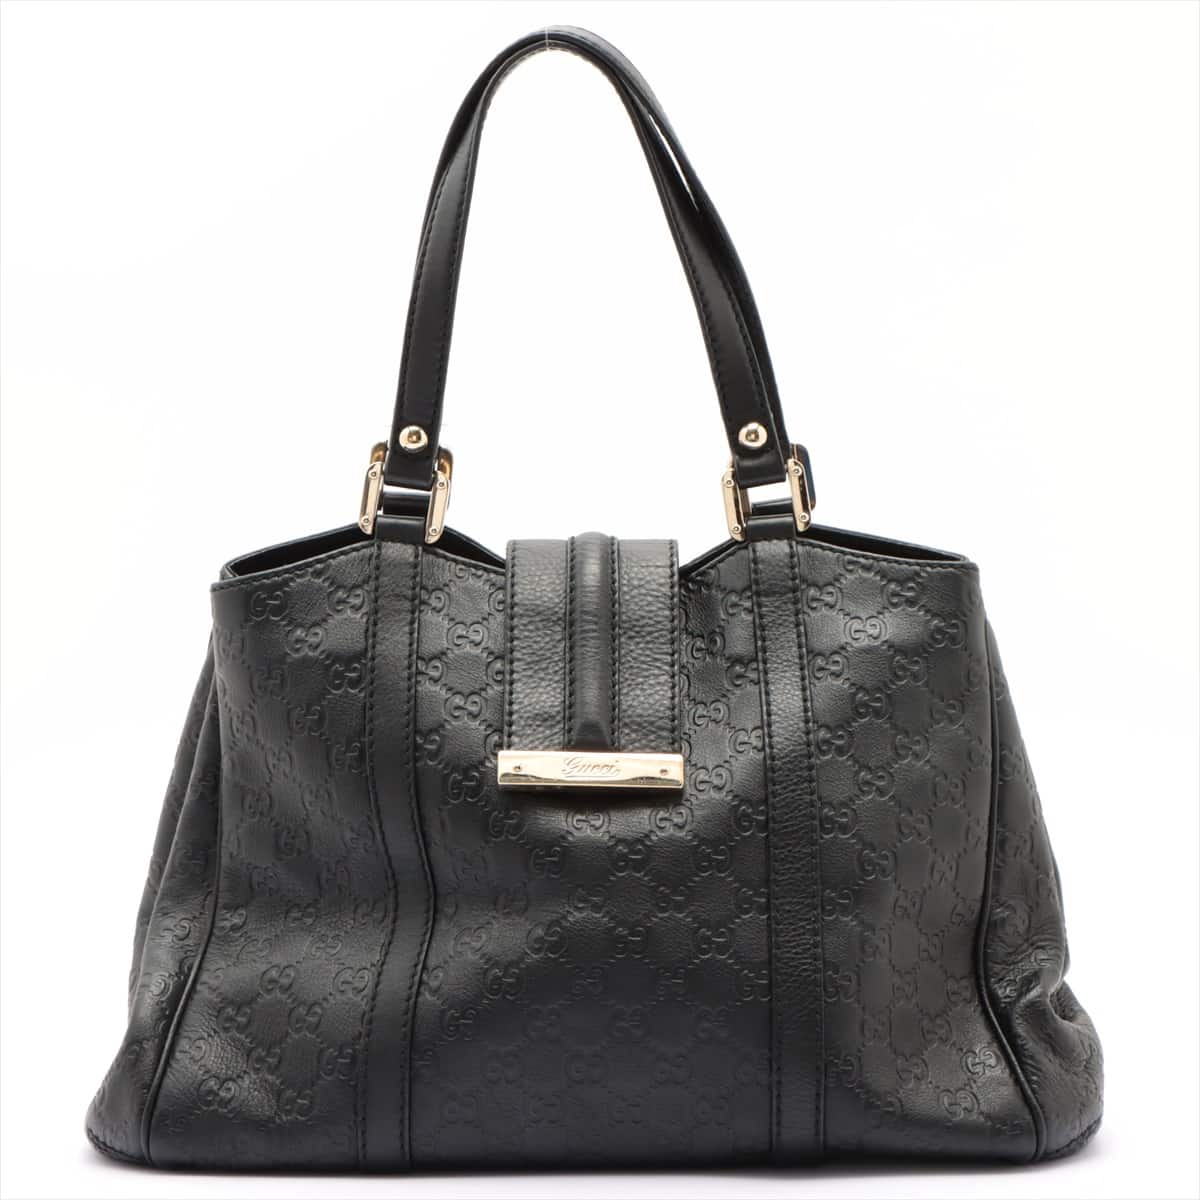 Gucci Guccissima Leather Tote bag Black 233609